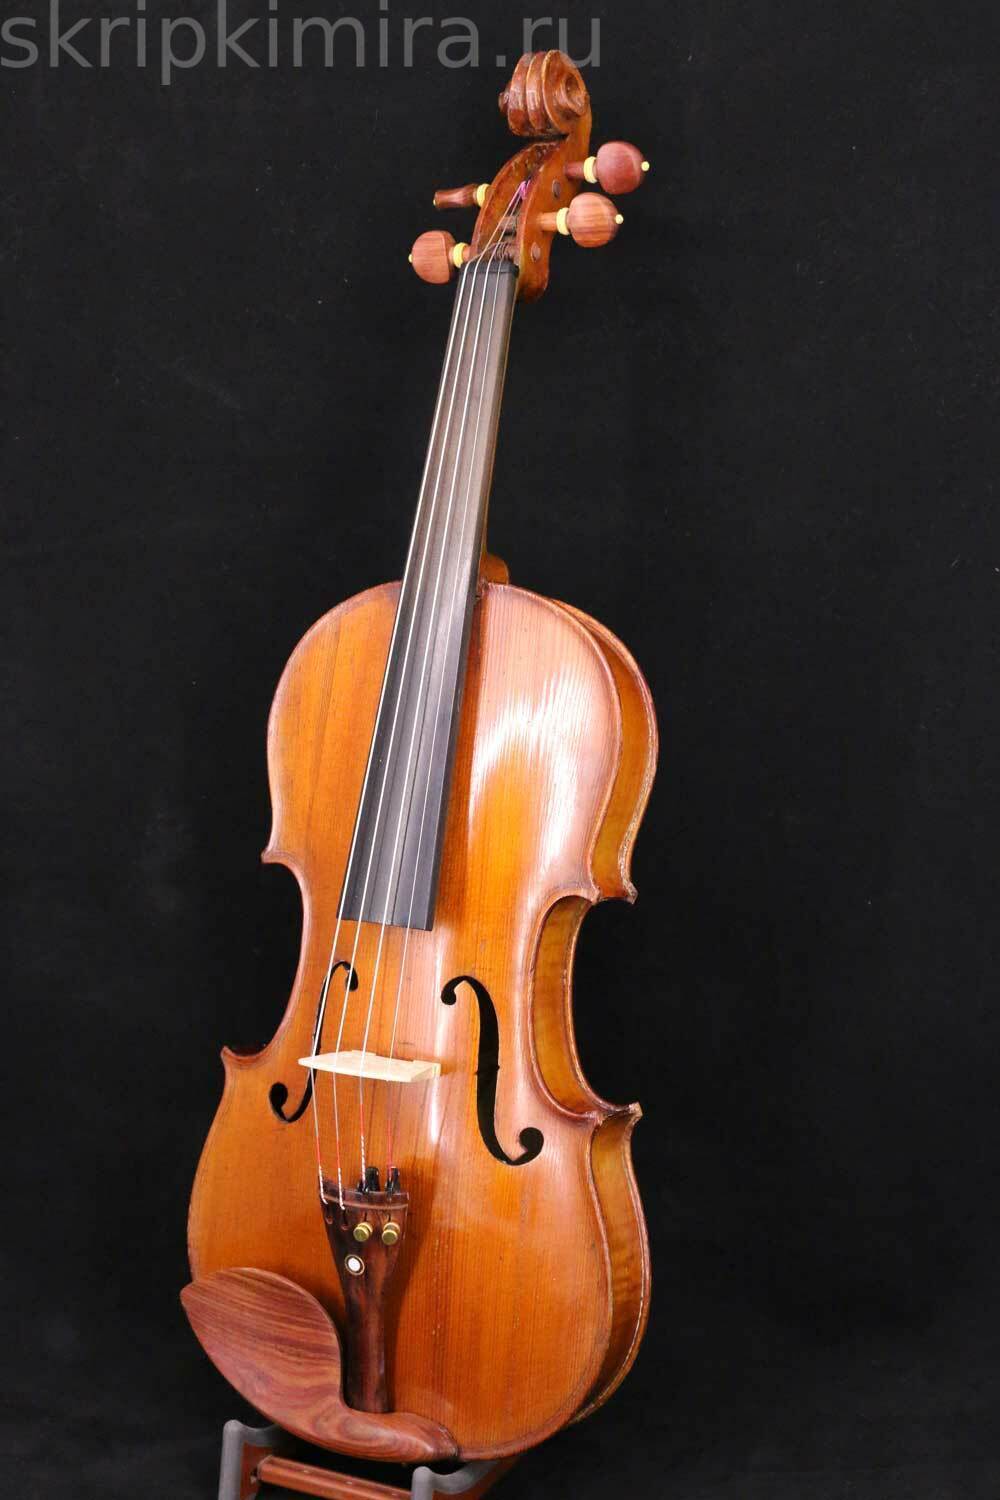 Скрипка фото. Скрипка 19 века. Французская скрипка. Магазин скрипок.